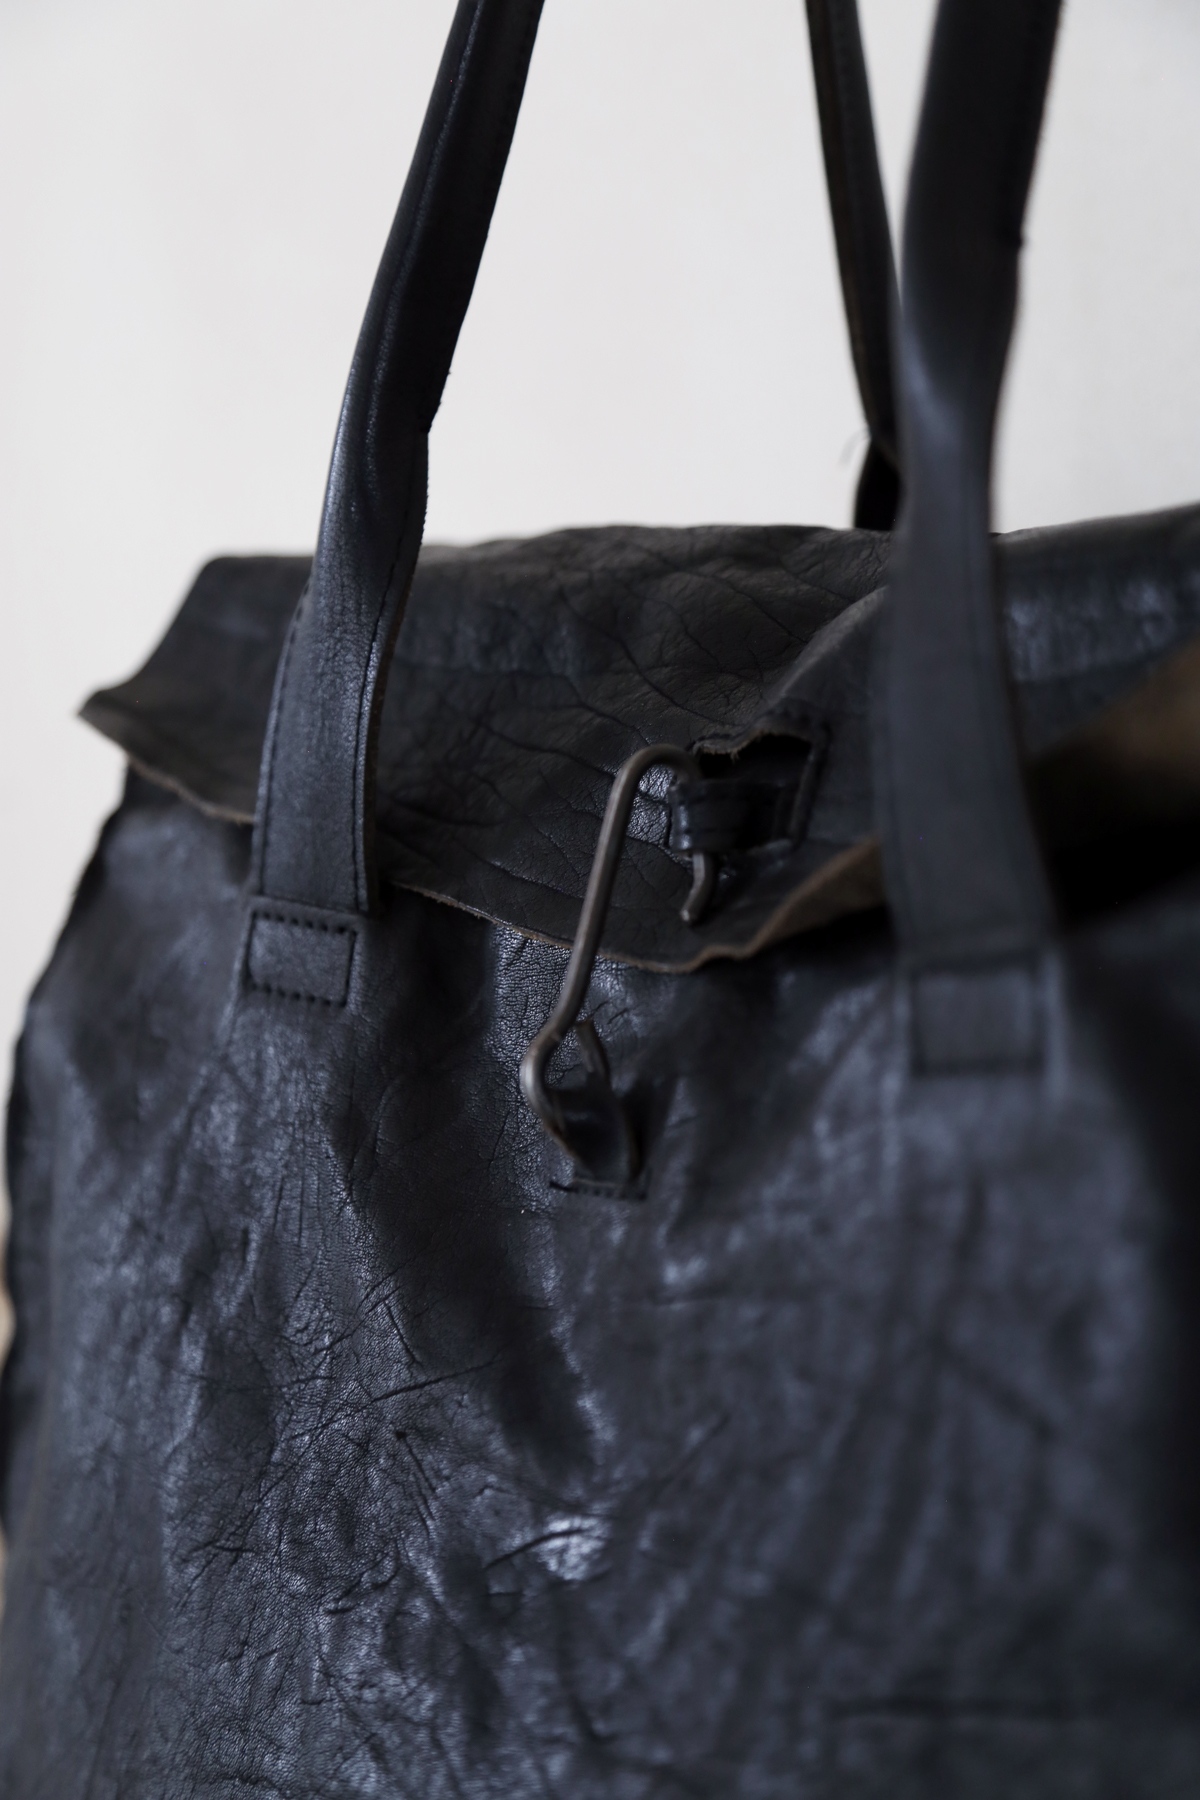 Black leather doctor's bag Belinda at